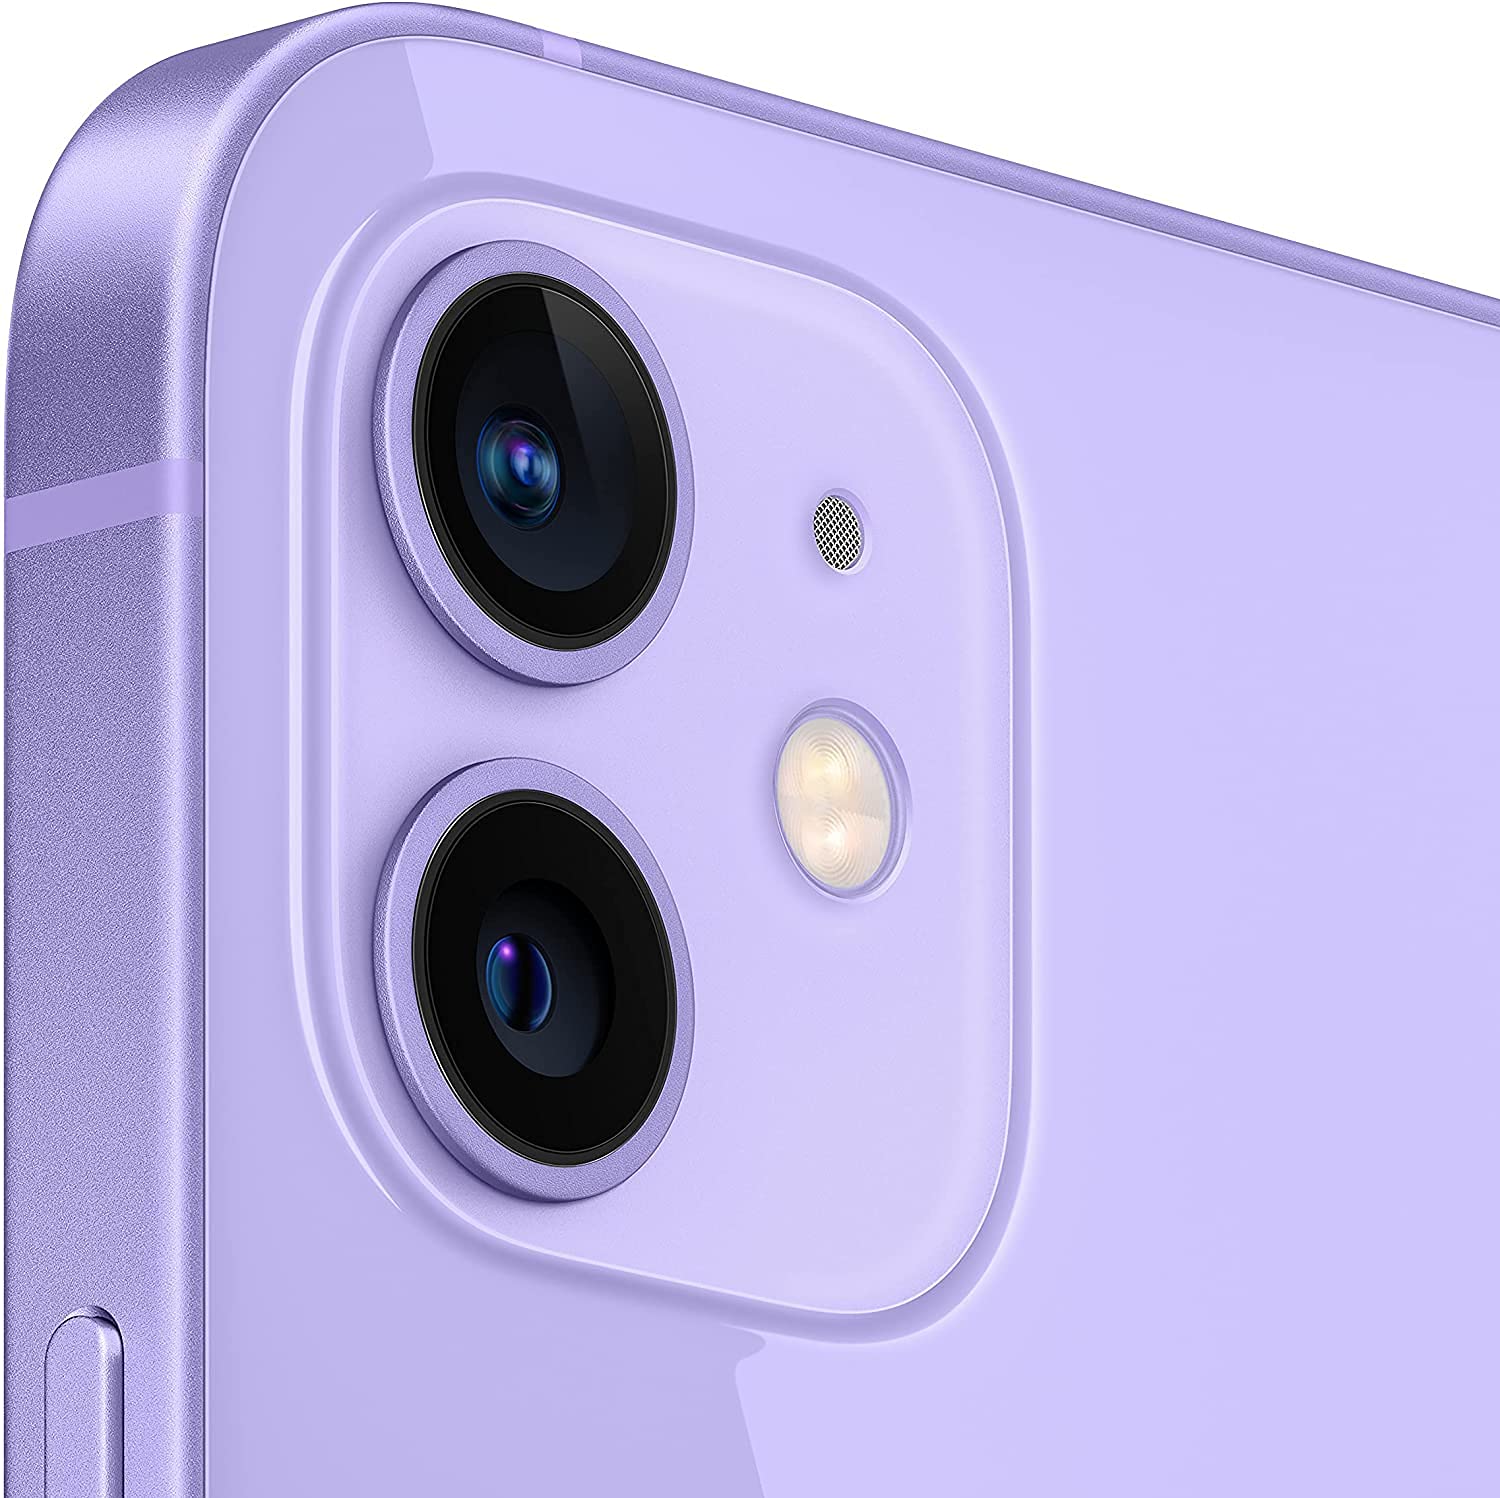 Apple iPhone 12 Mini, 64GB, Purple - Unlocked (Renewed Premium)